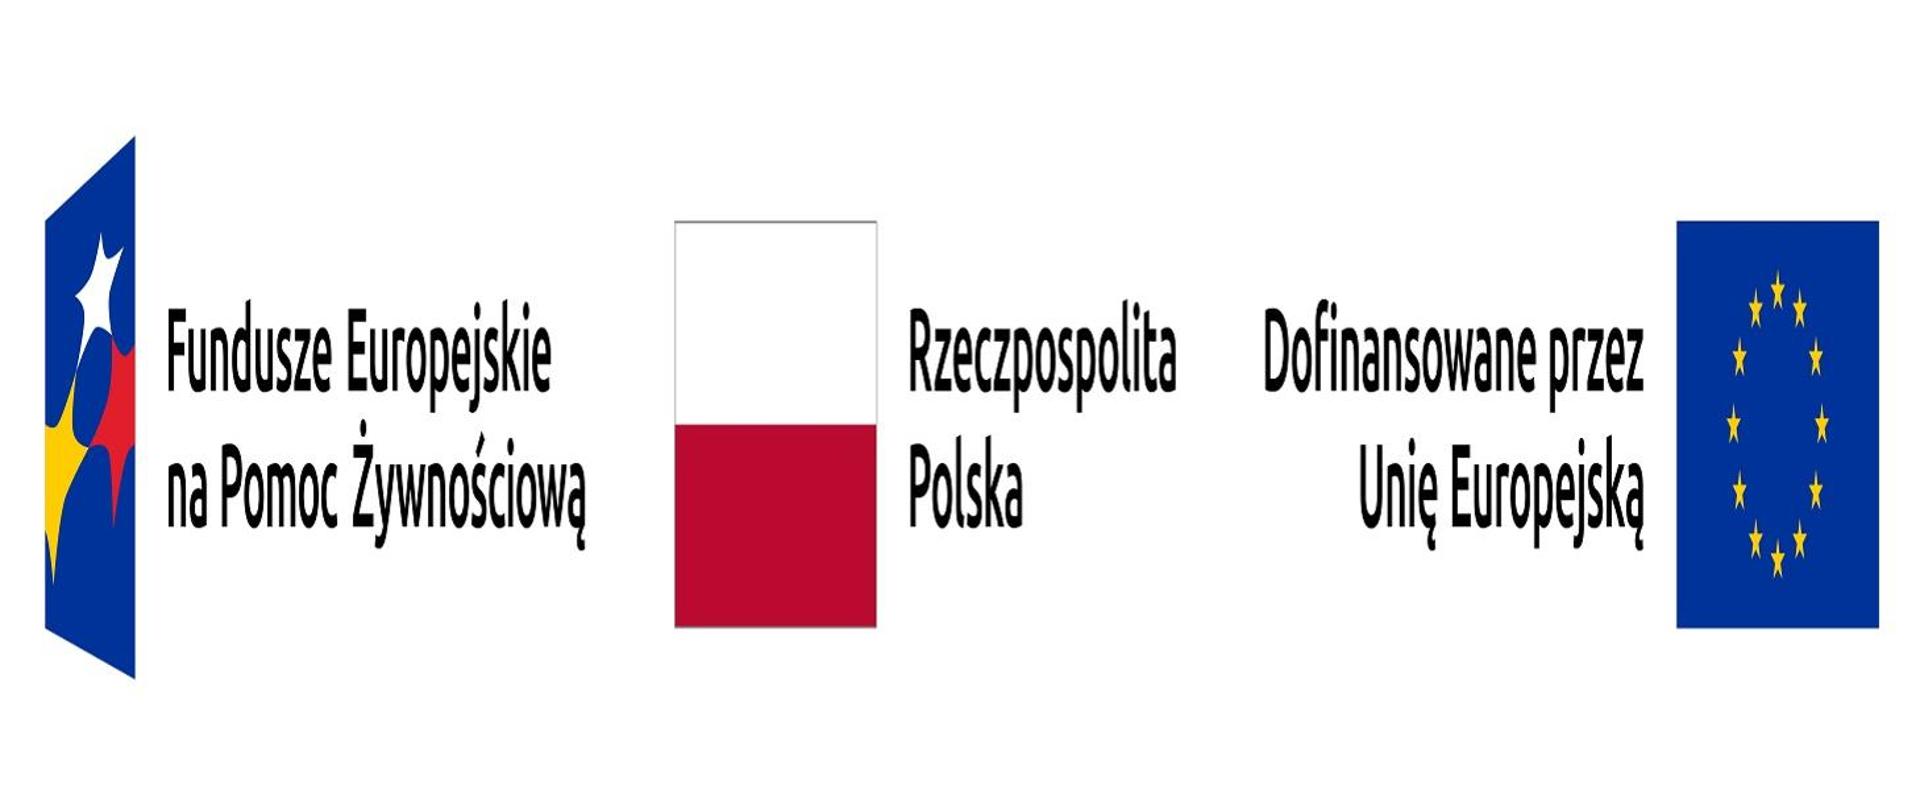 Zdjęcie przedstawia zestawienie znaków Programu, flagi RP i flagi Unii Europejskiej